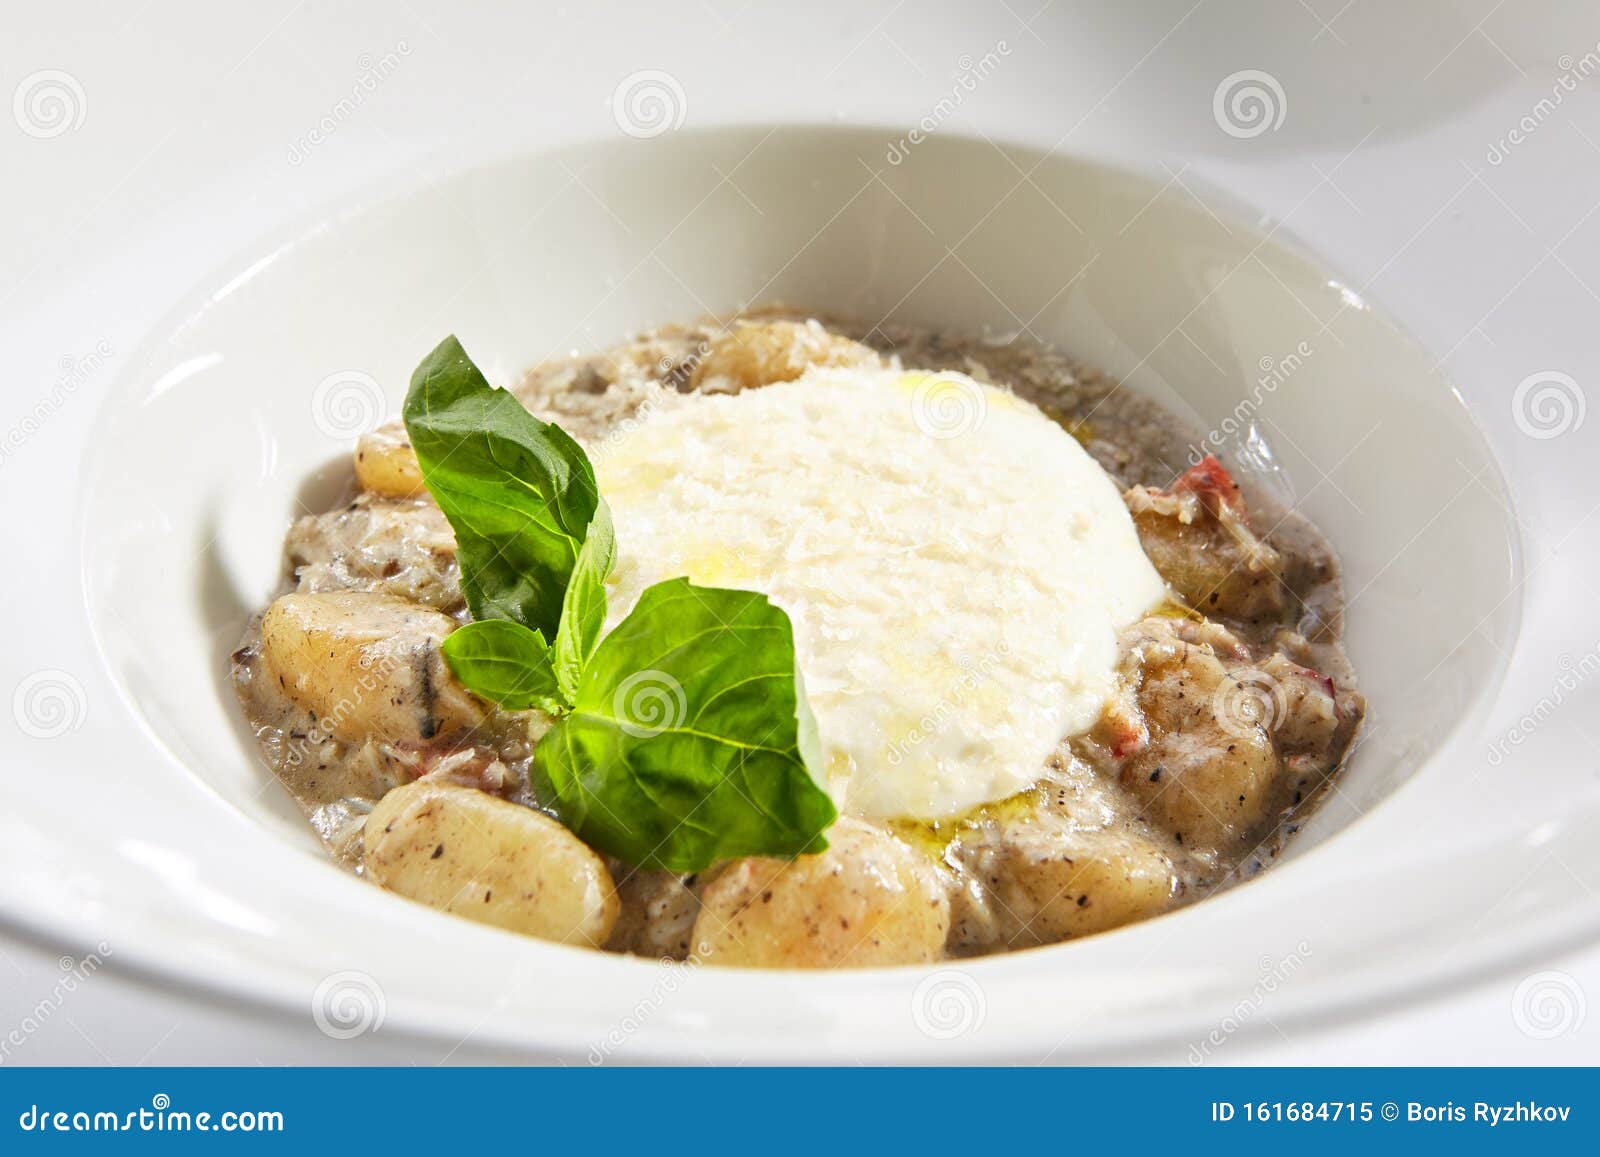 gnocchi in mushroom sauce with cheese espuma